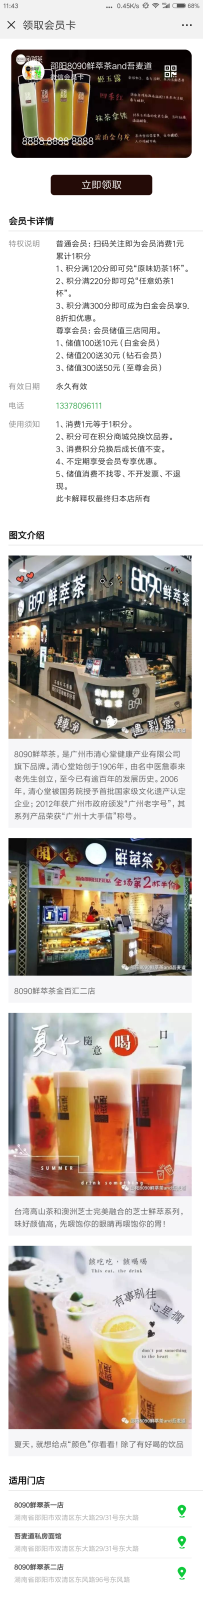 Screenshot_2018-08-28-11-43-10-863_com.tencent.mm.png